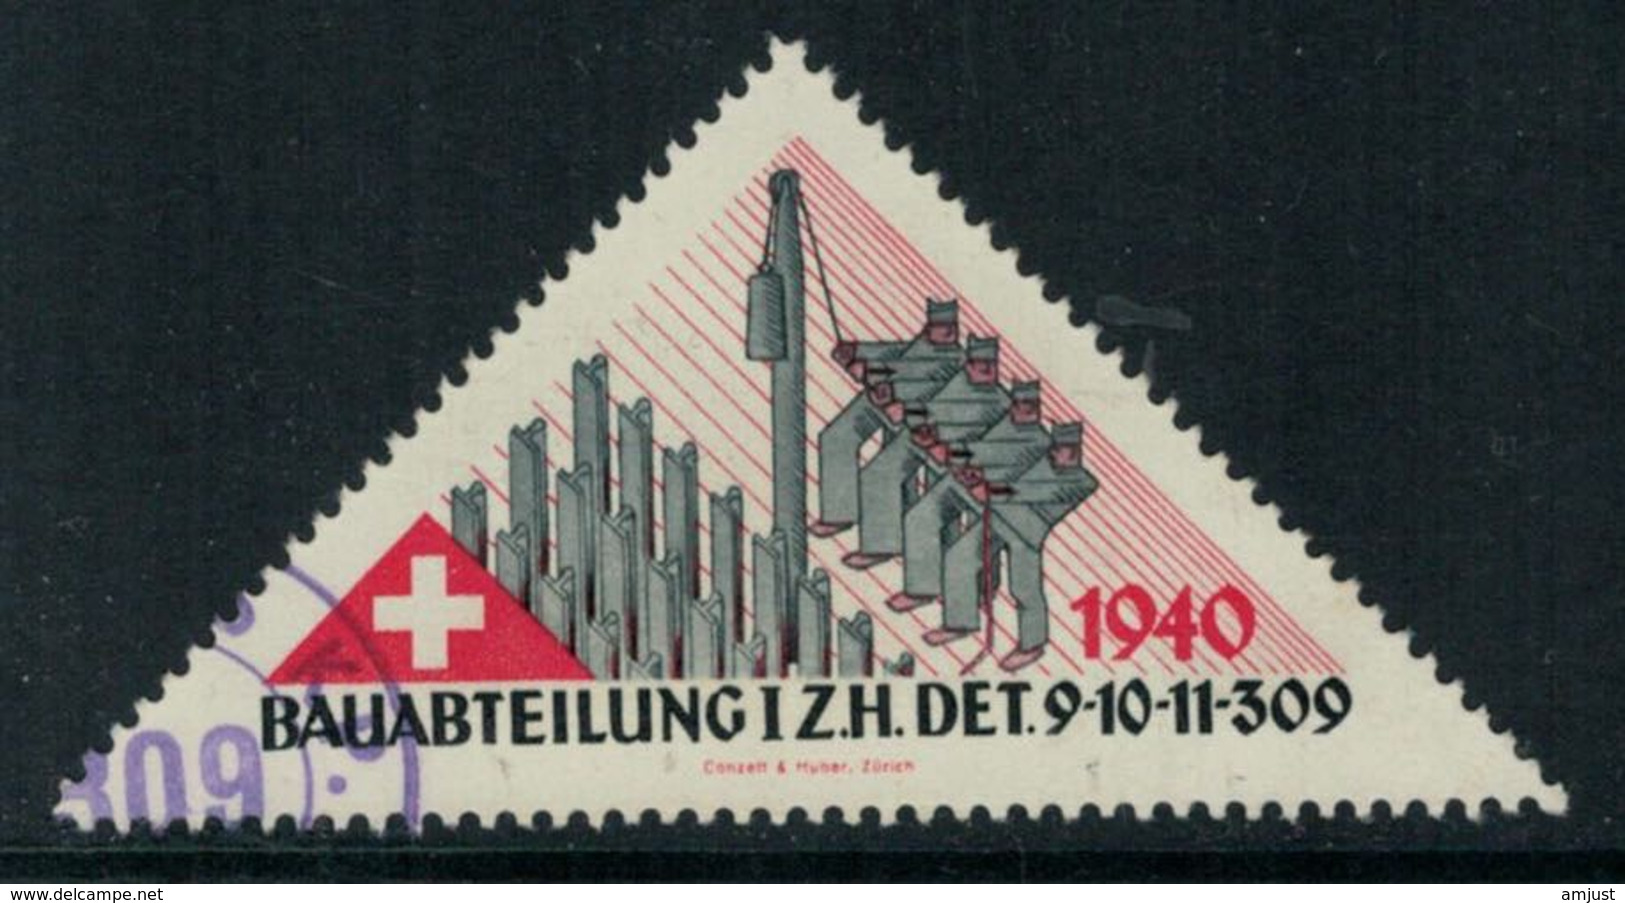 Suisse /Schweiz/Switzerland // Vignette Militaire // HD-Baudienst, I.ZH. Det. 9-10-11-309 - Viñetas